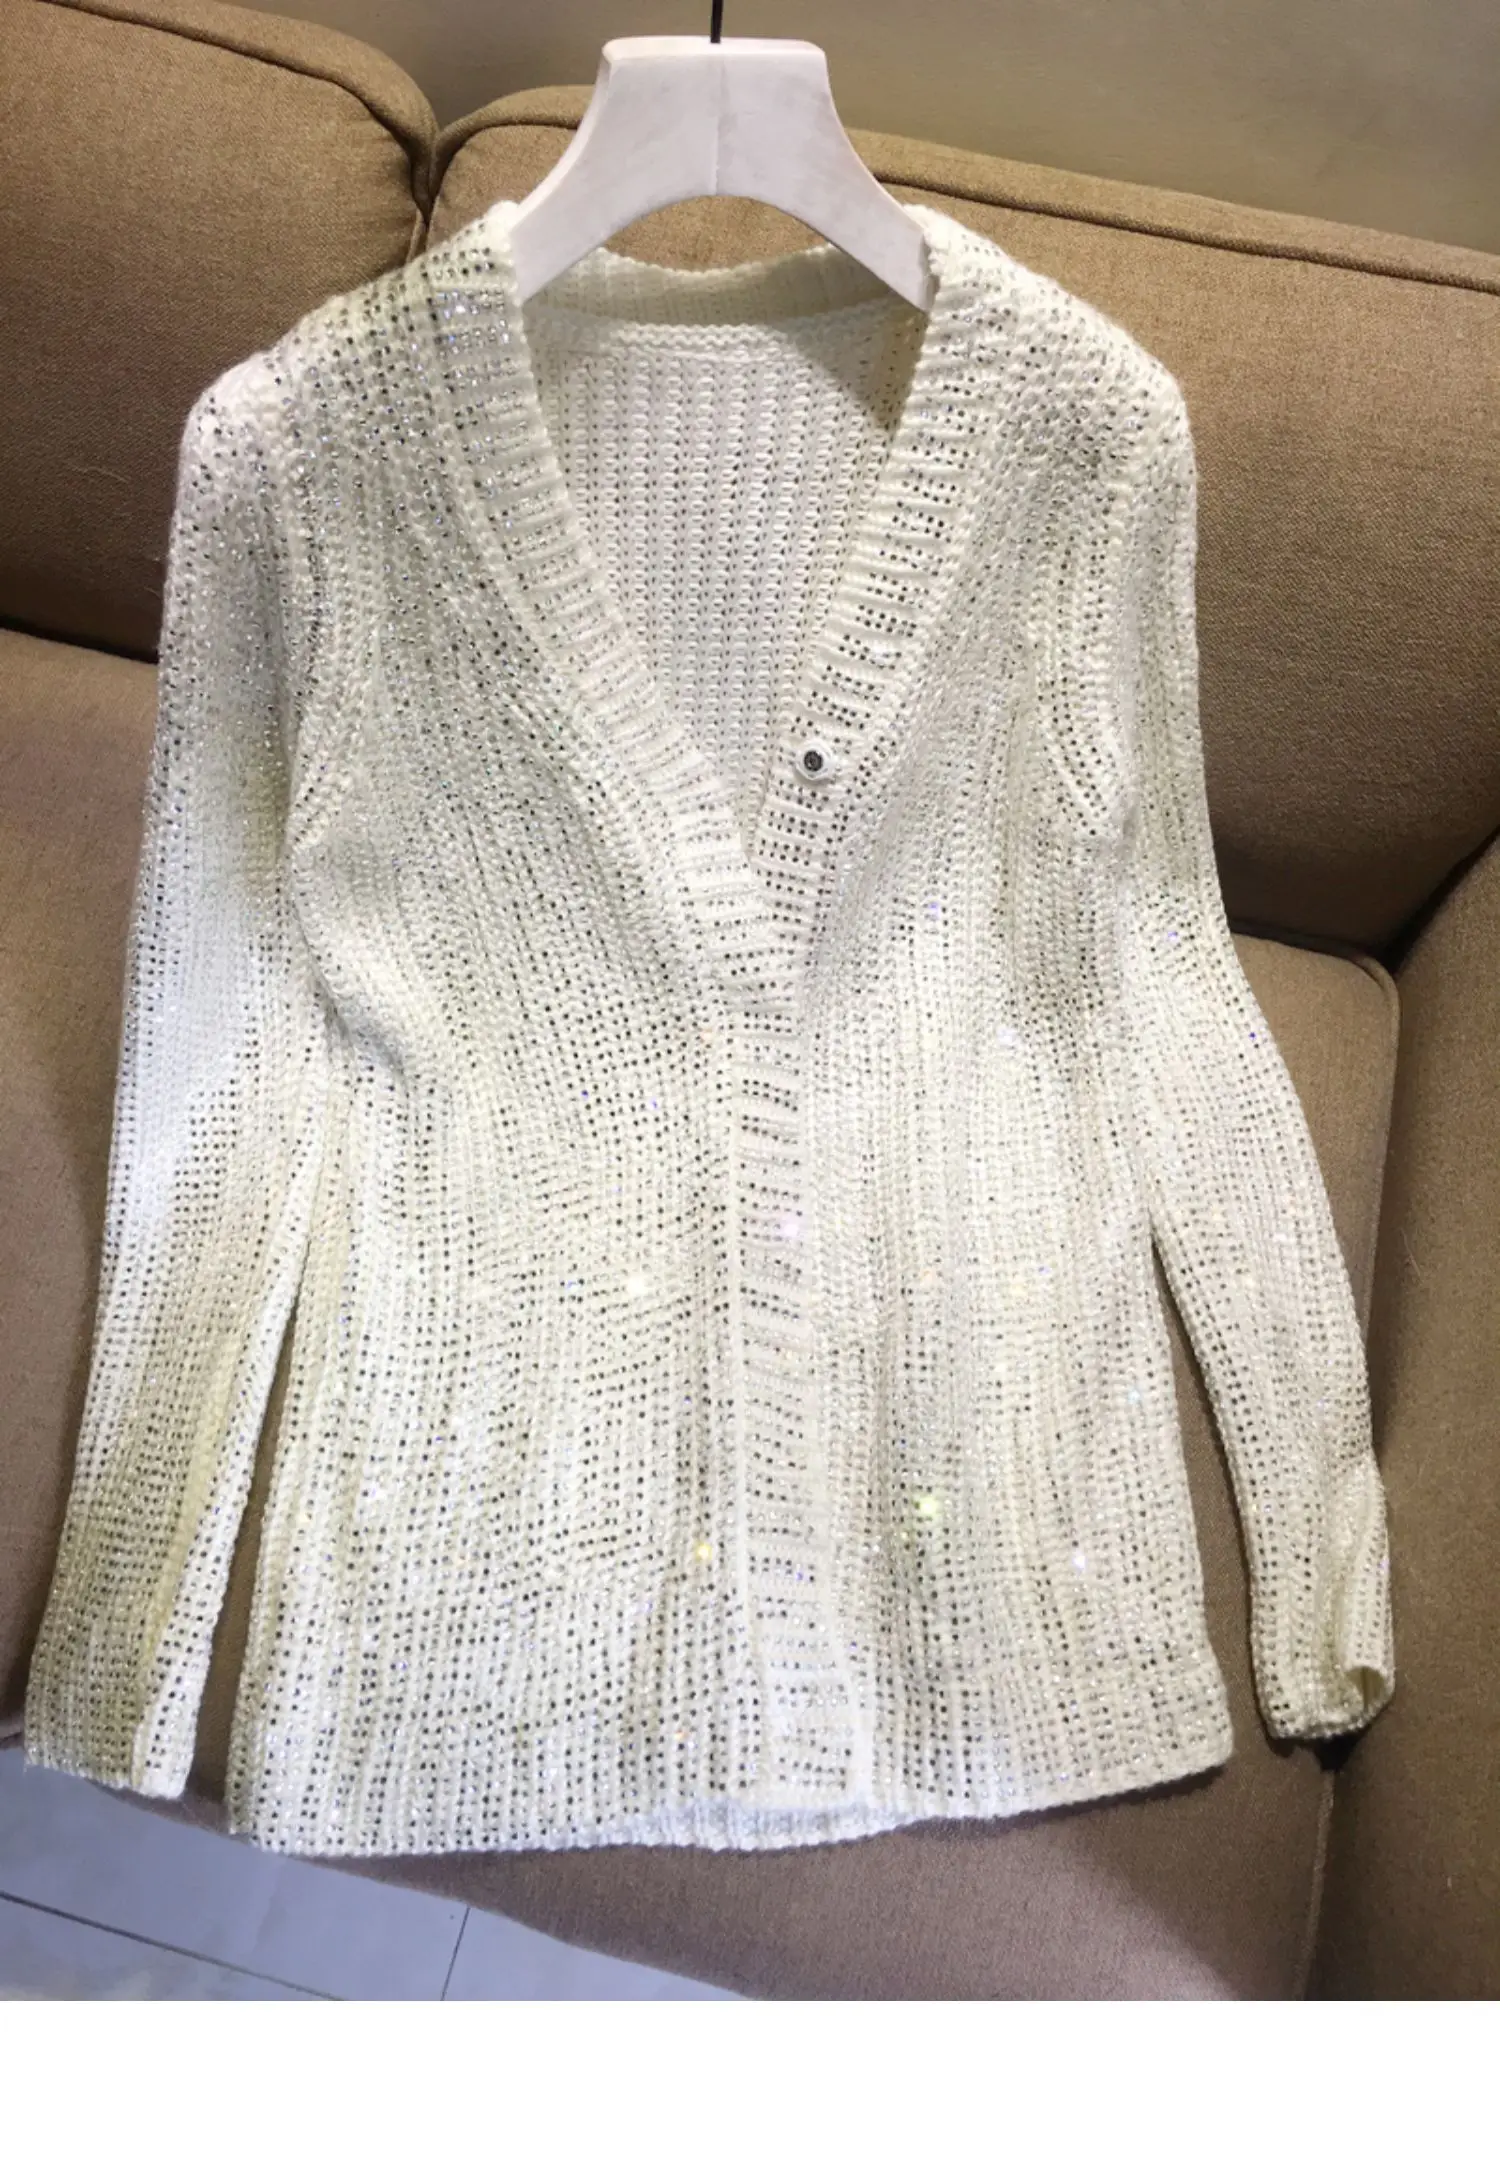 Европейский станция женщин тяжелой промышленности Стразы свитер джемпер горячего тиснения Блестящий Полный алмаз верхнее пальто